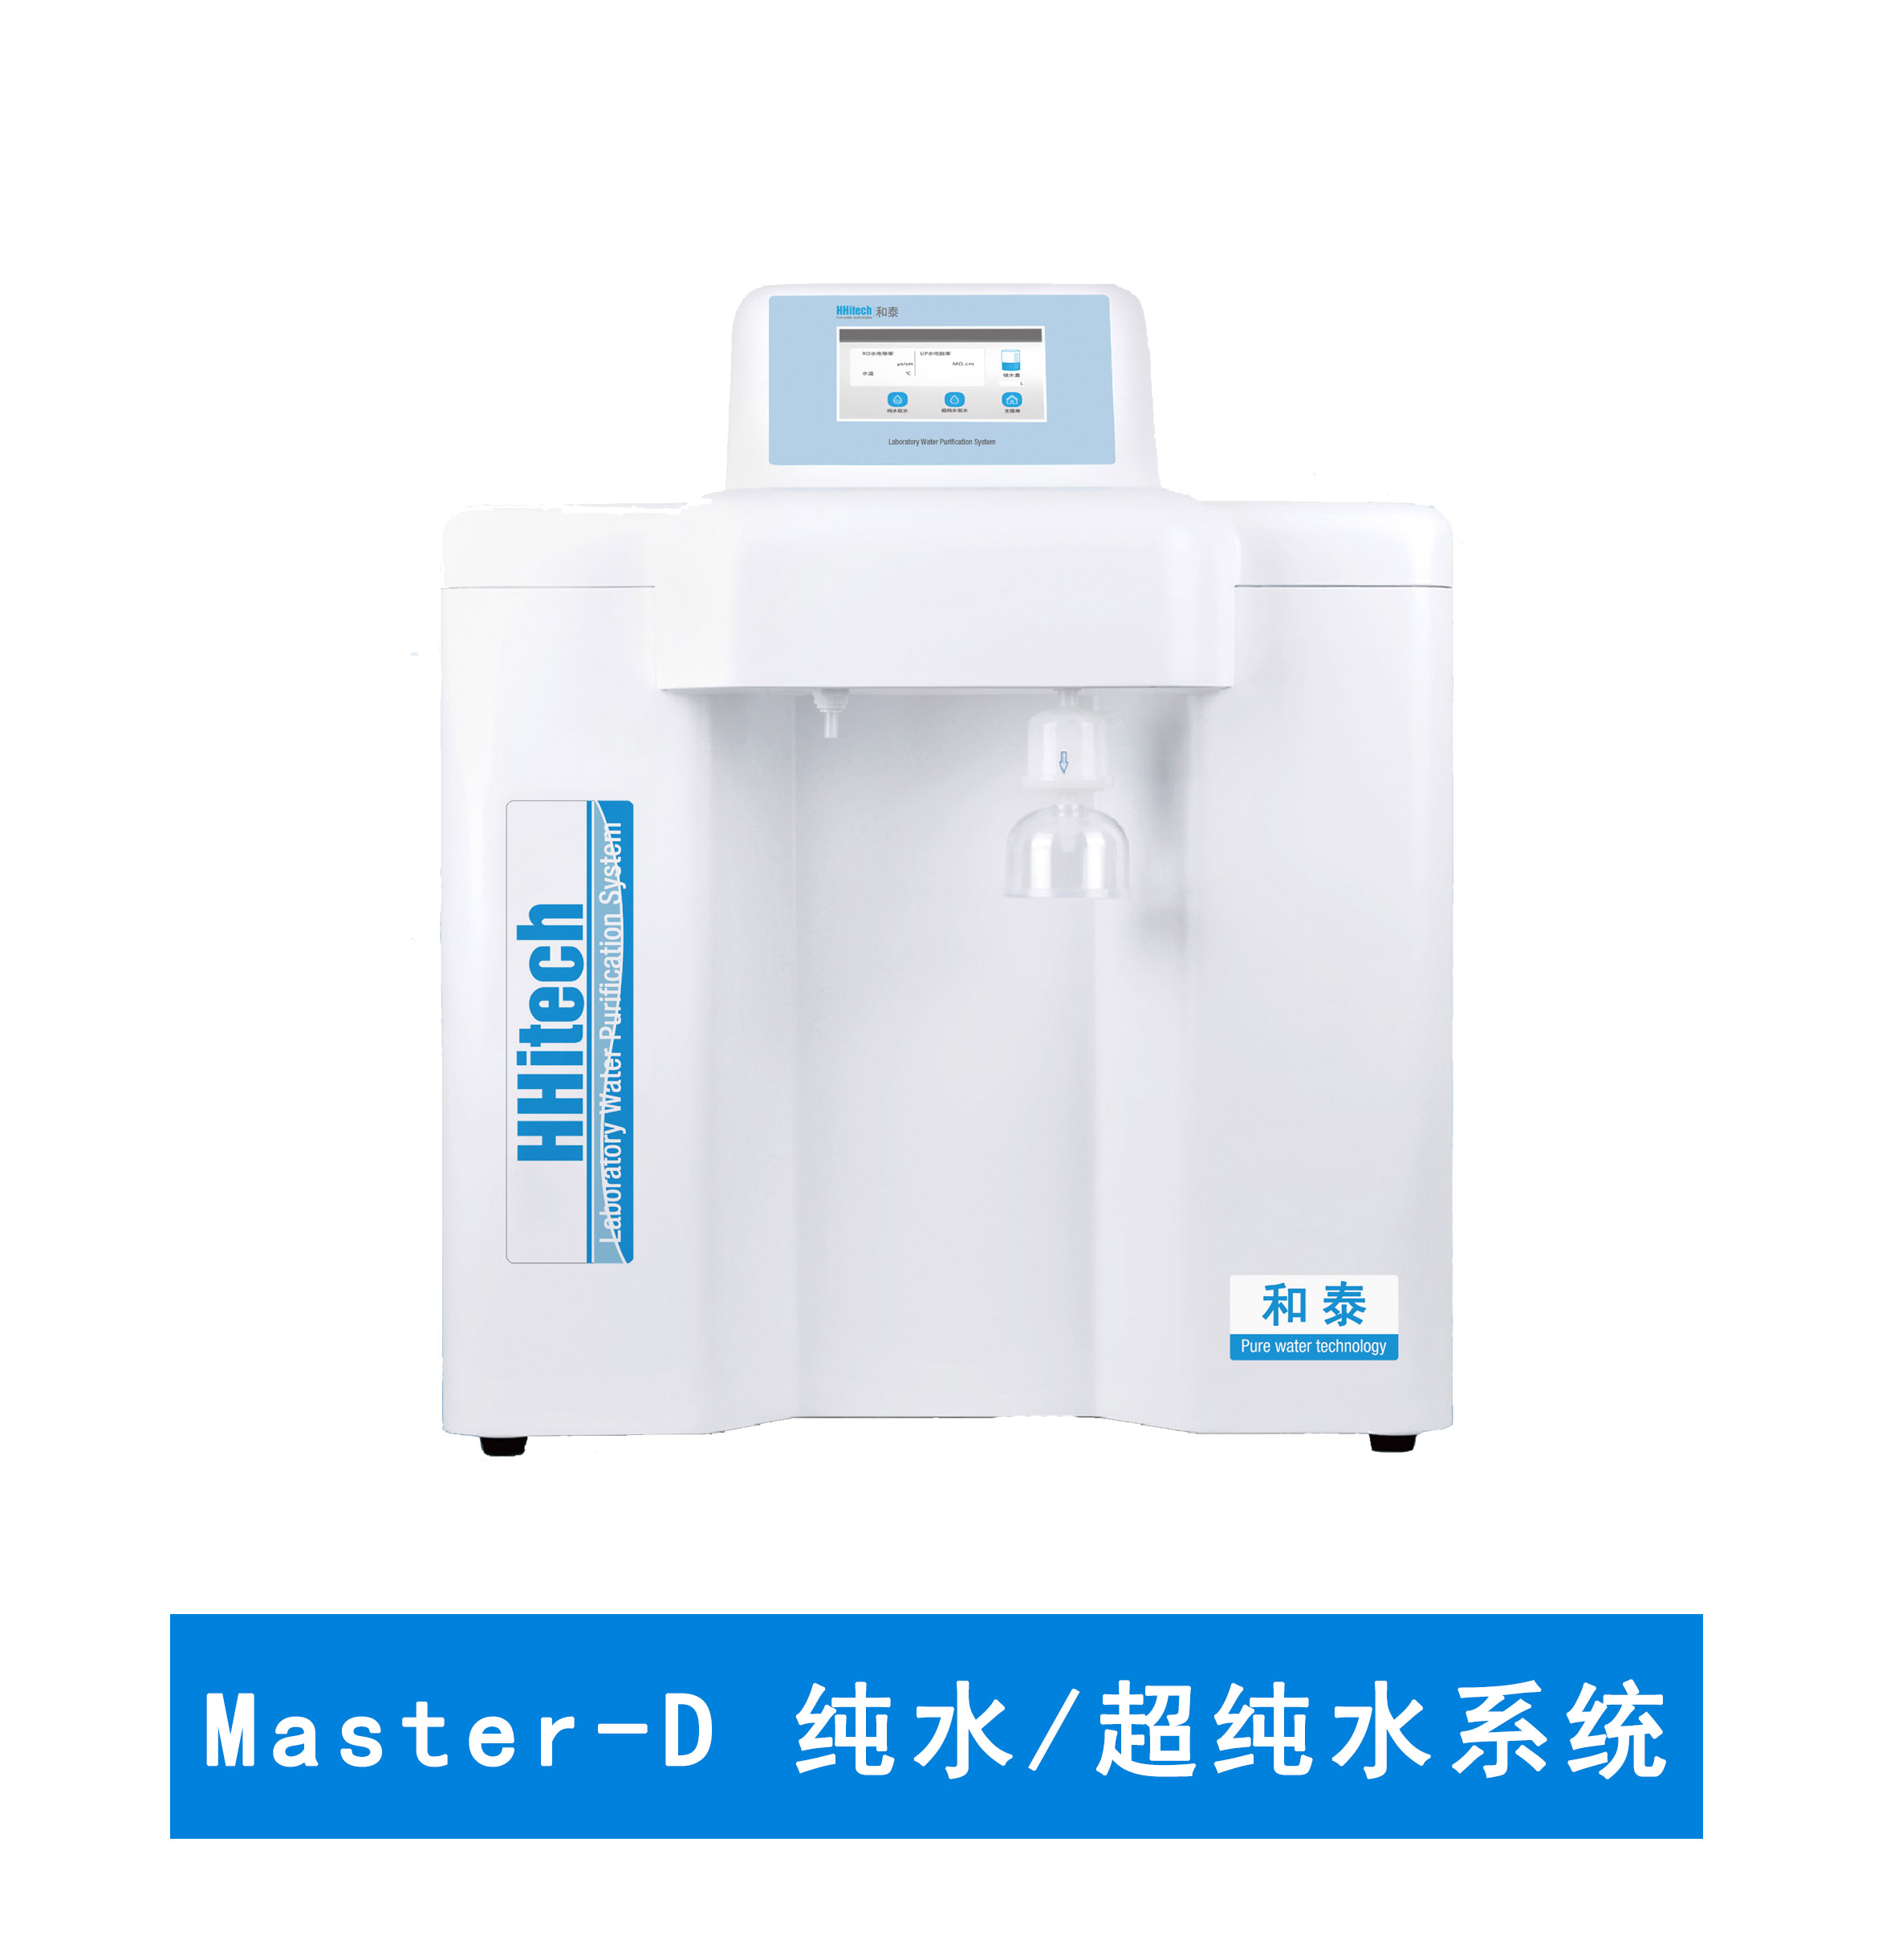 上海和泰 Master-D 超纯水机